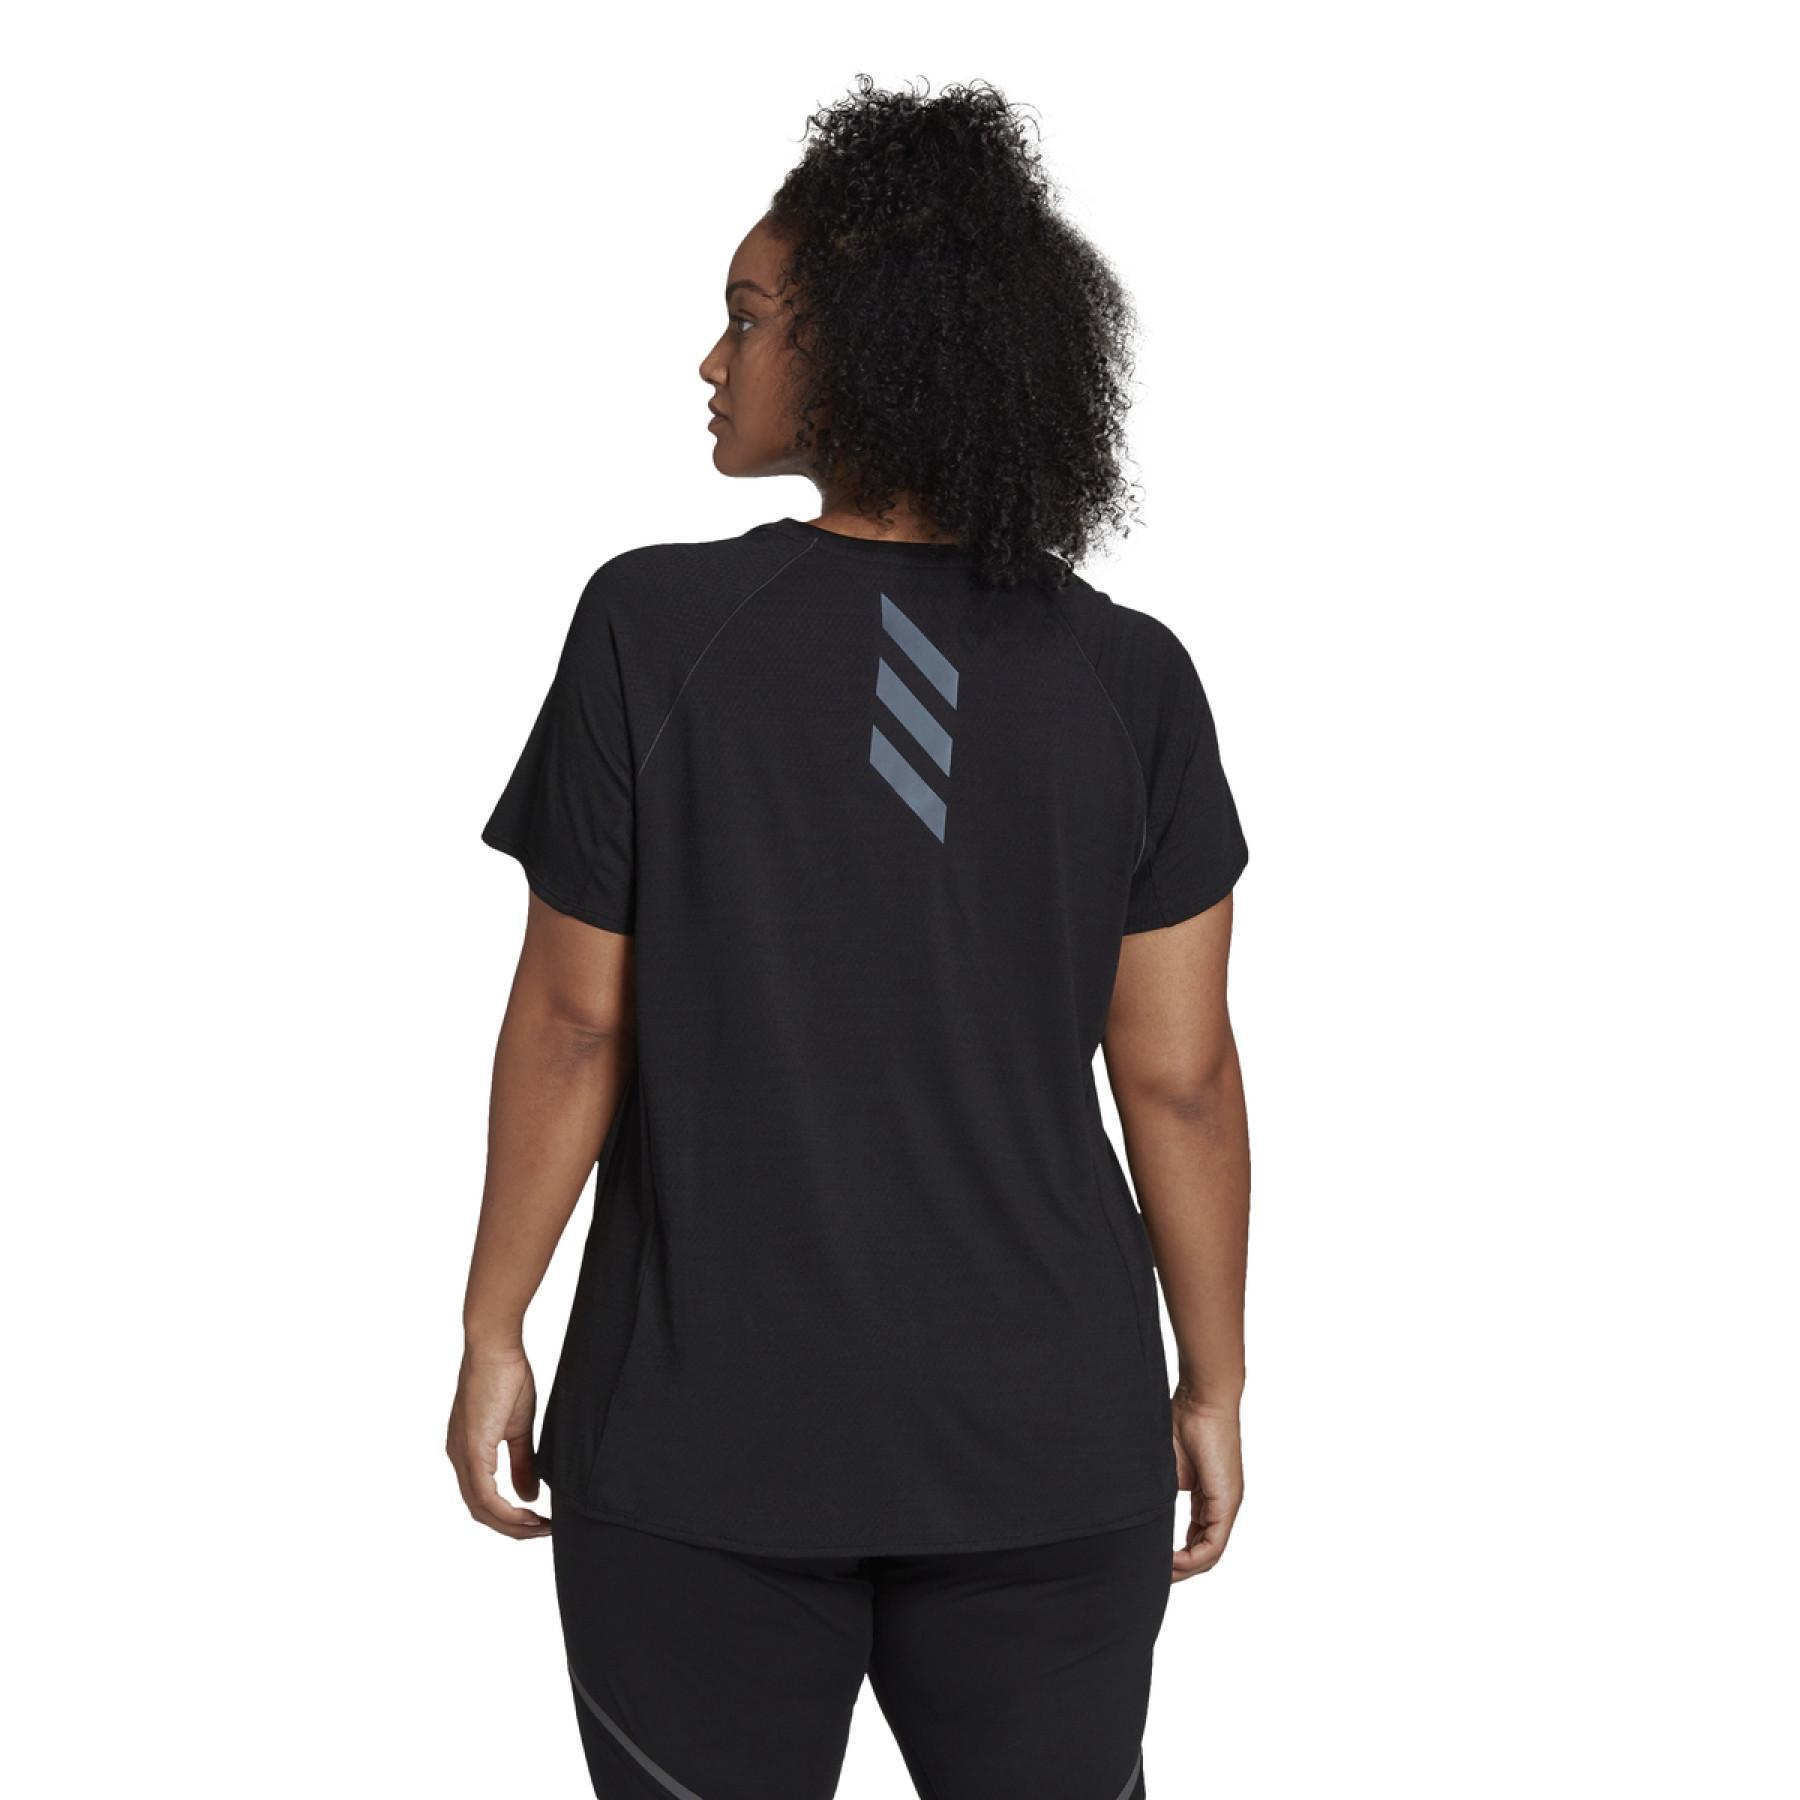 Camiseta feminina adidas Runner Grande Taille